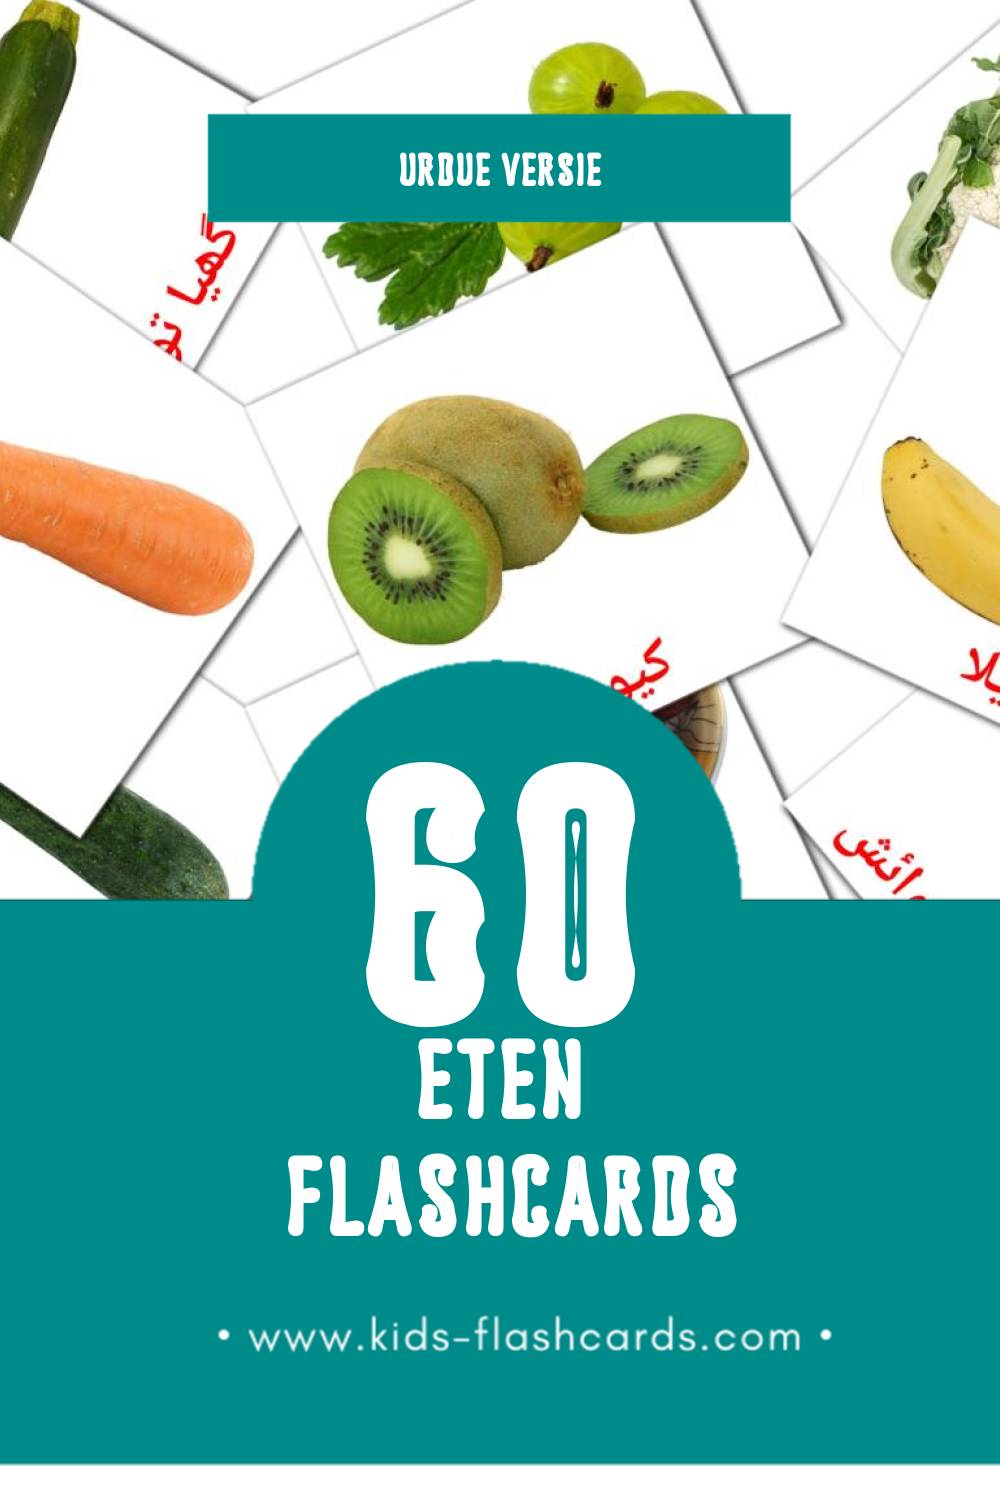 Visuele خوراک Flashcards voor Kleuters (60 kaarten in het Urdu)